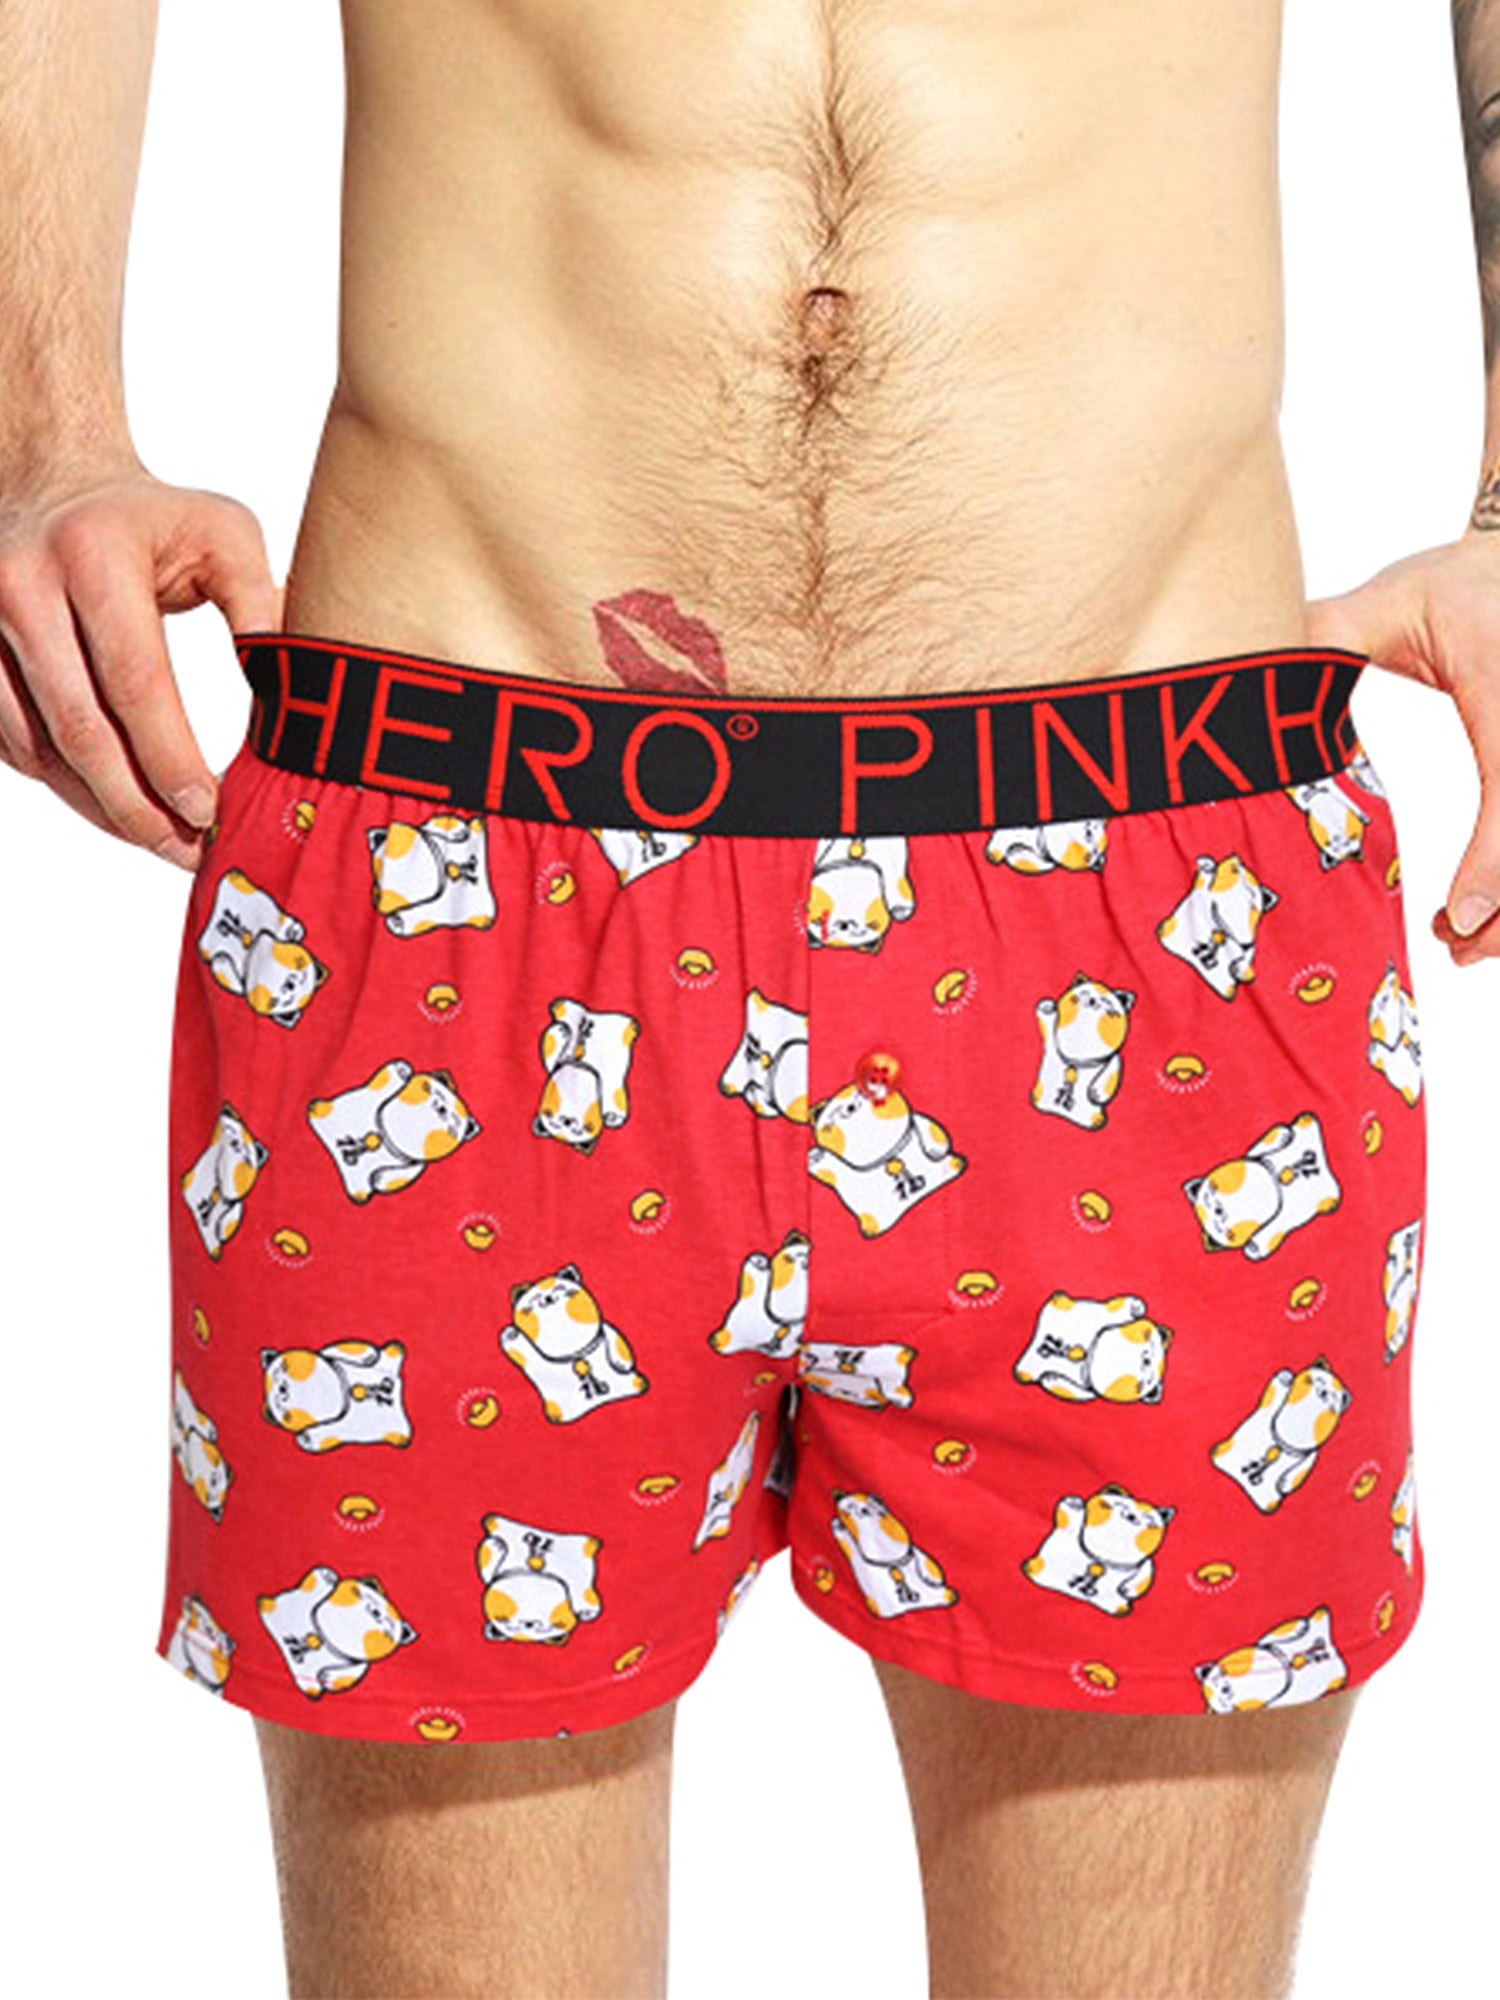 Mens Boxer Briefs Premium Pink Winter Bird Underwear Printed Trunks